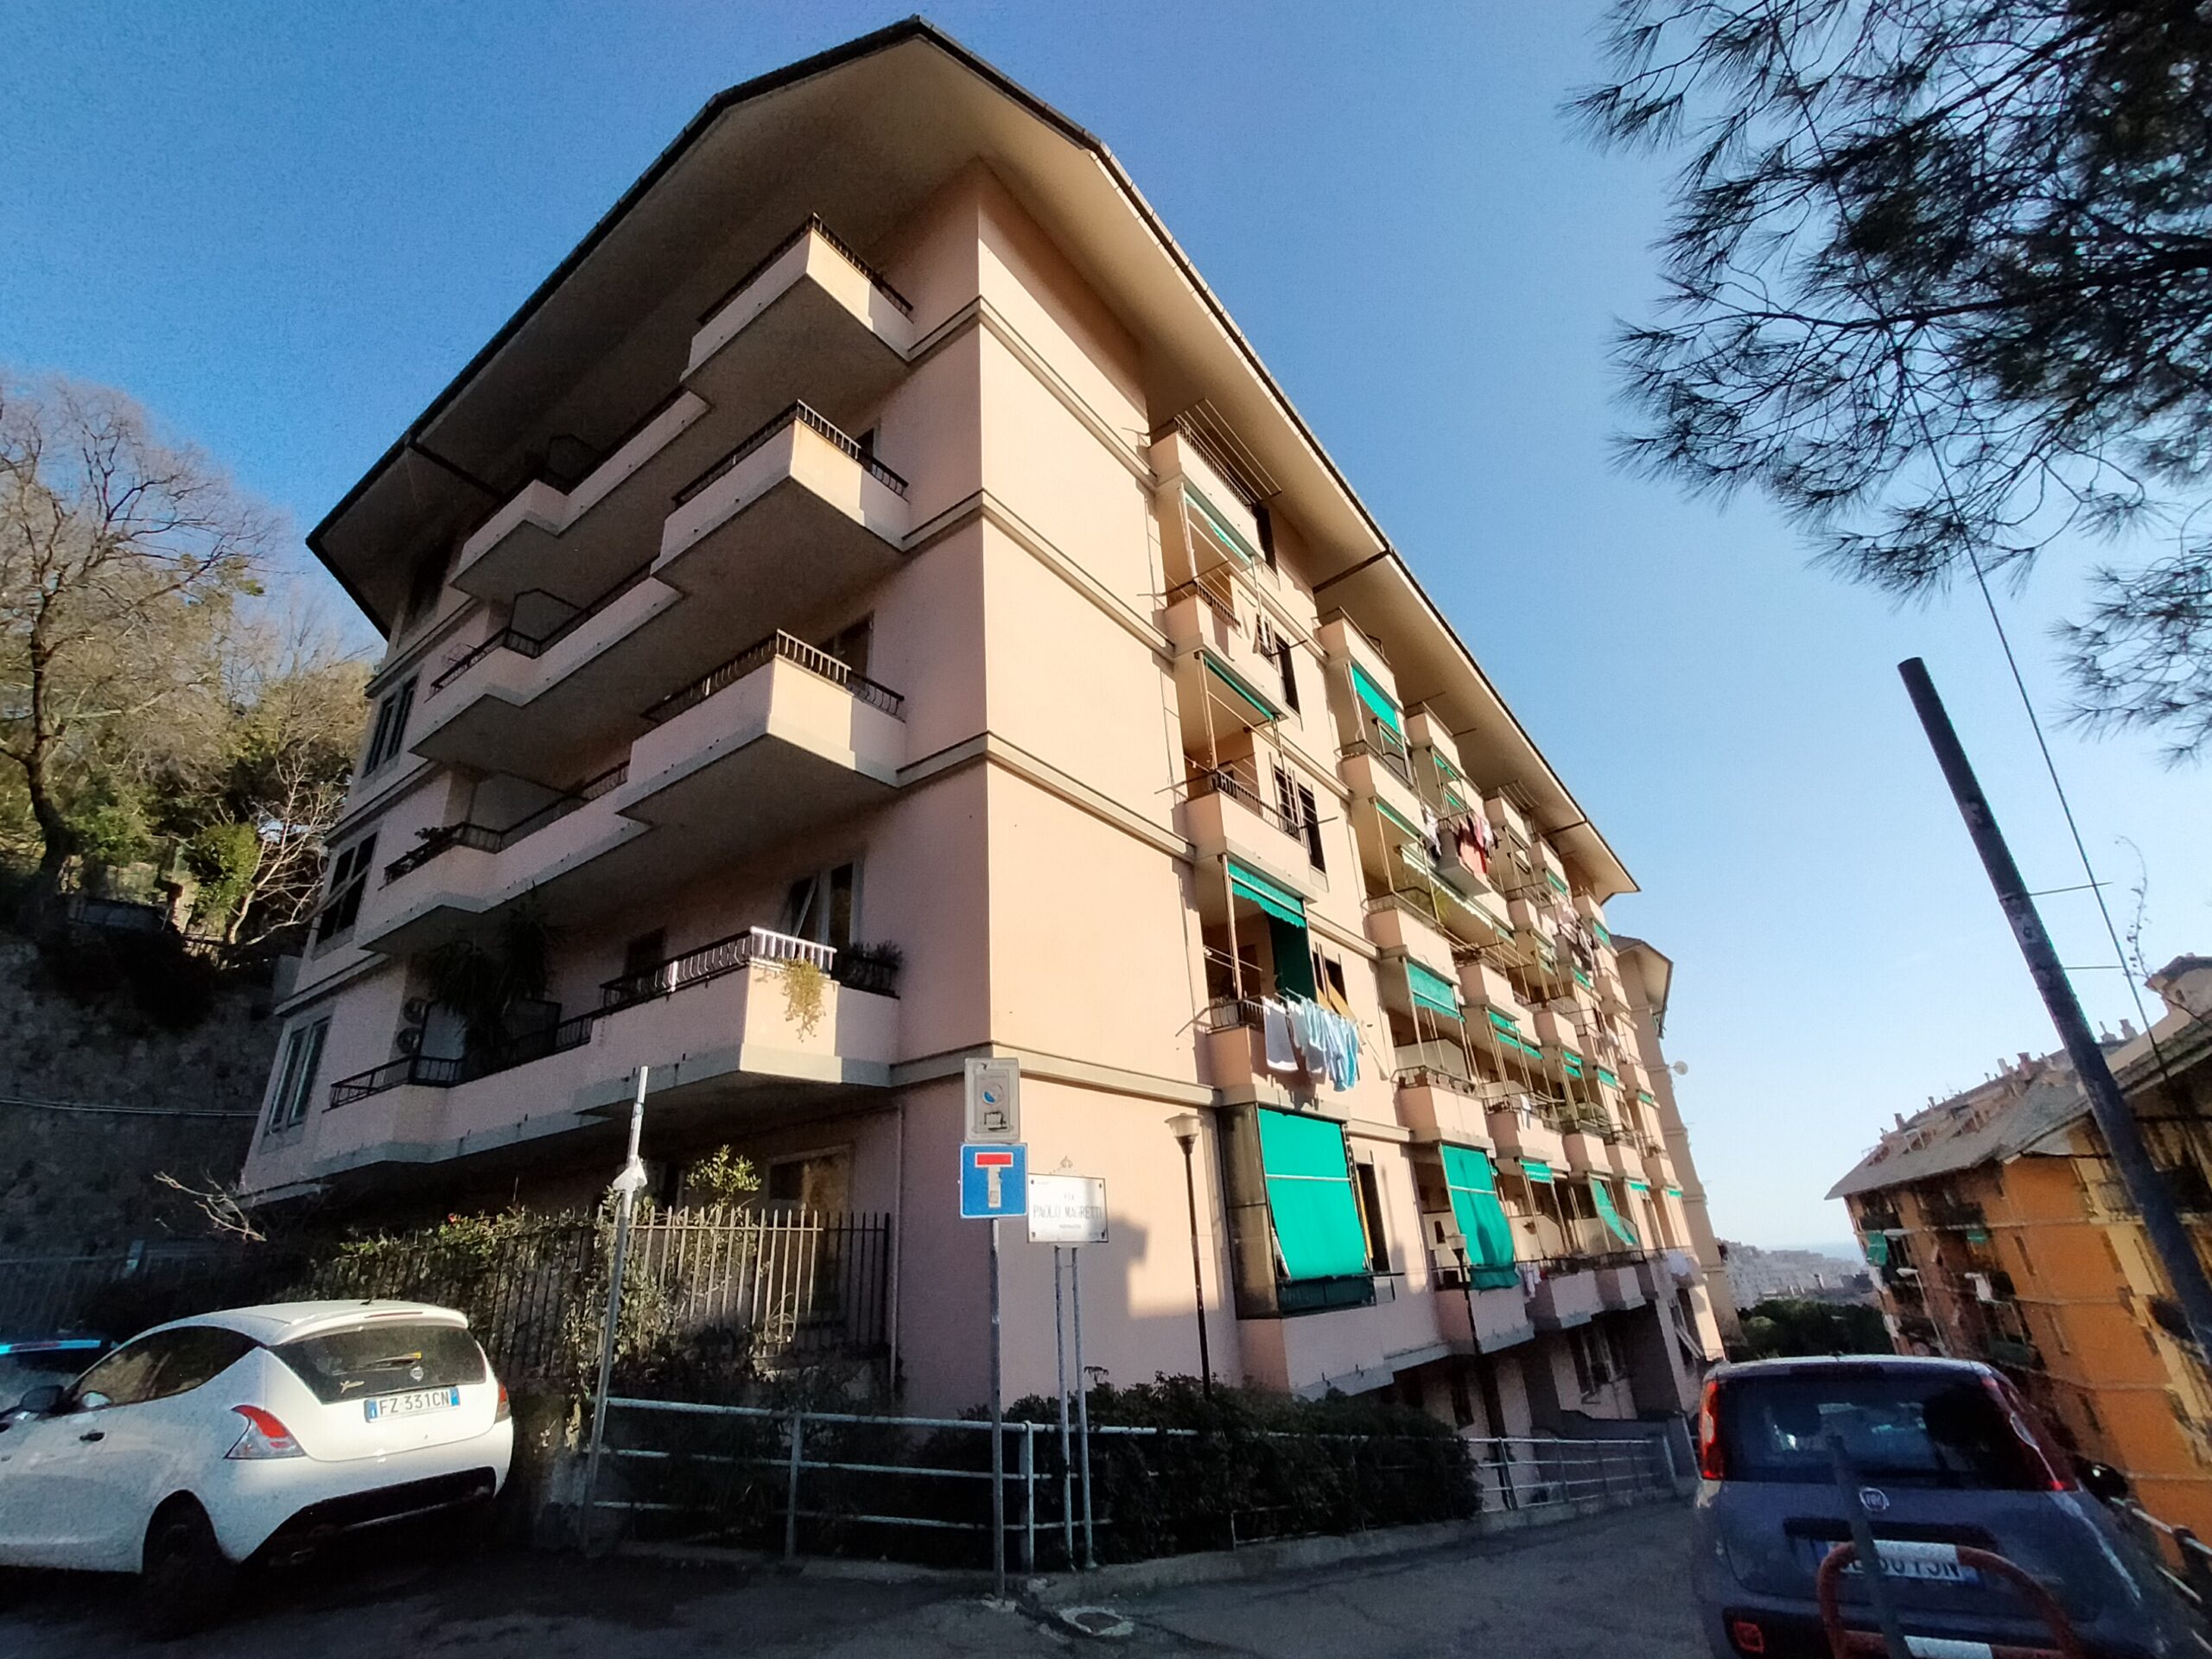 Marassi Residenziale – Vi Paolo Magretti